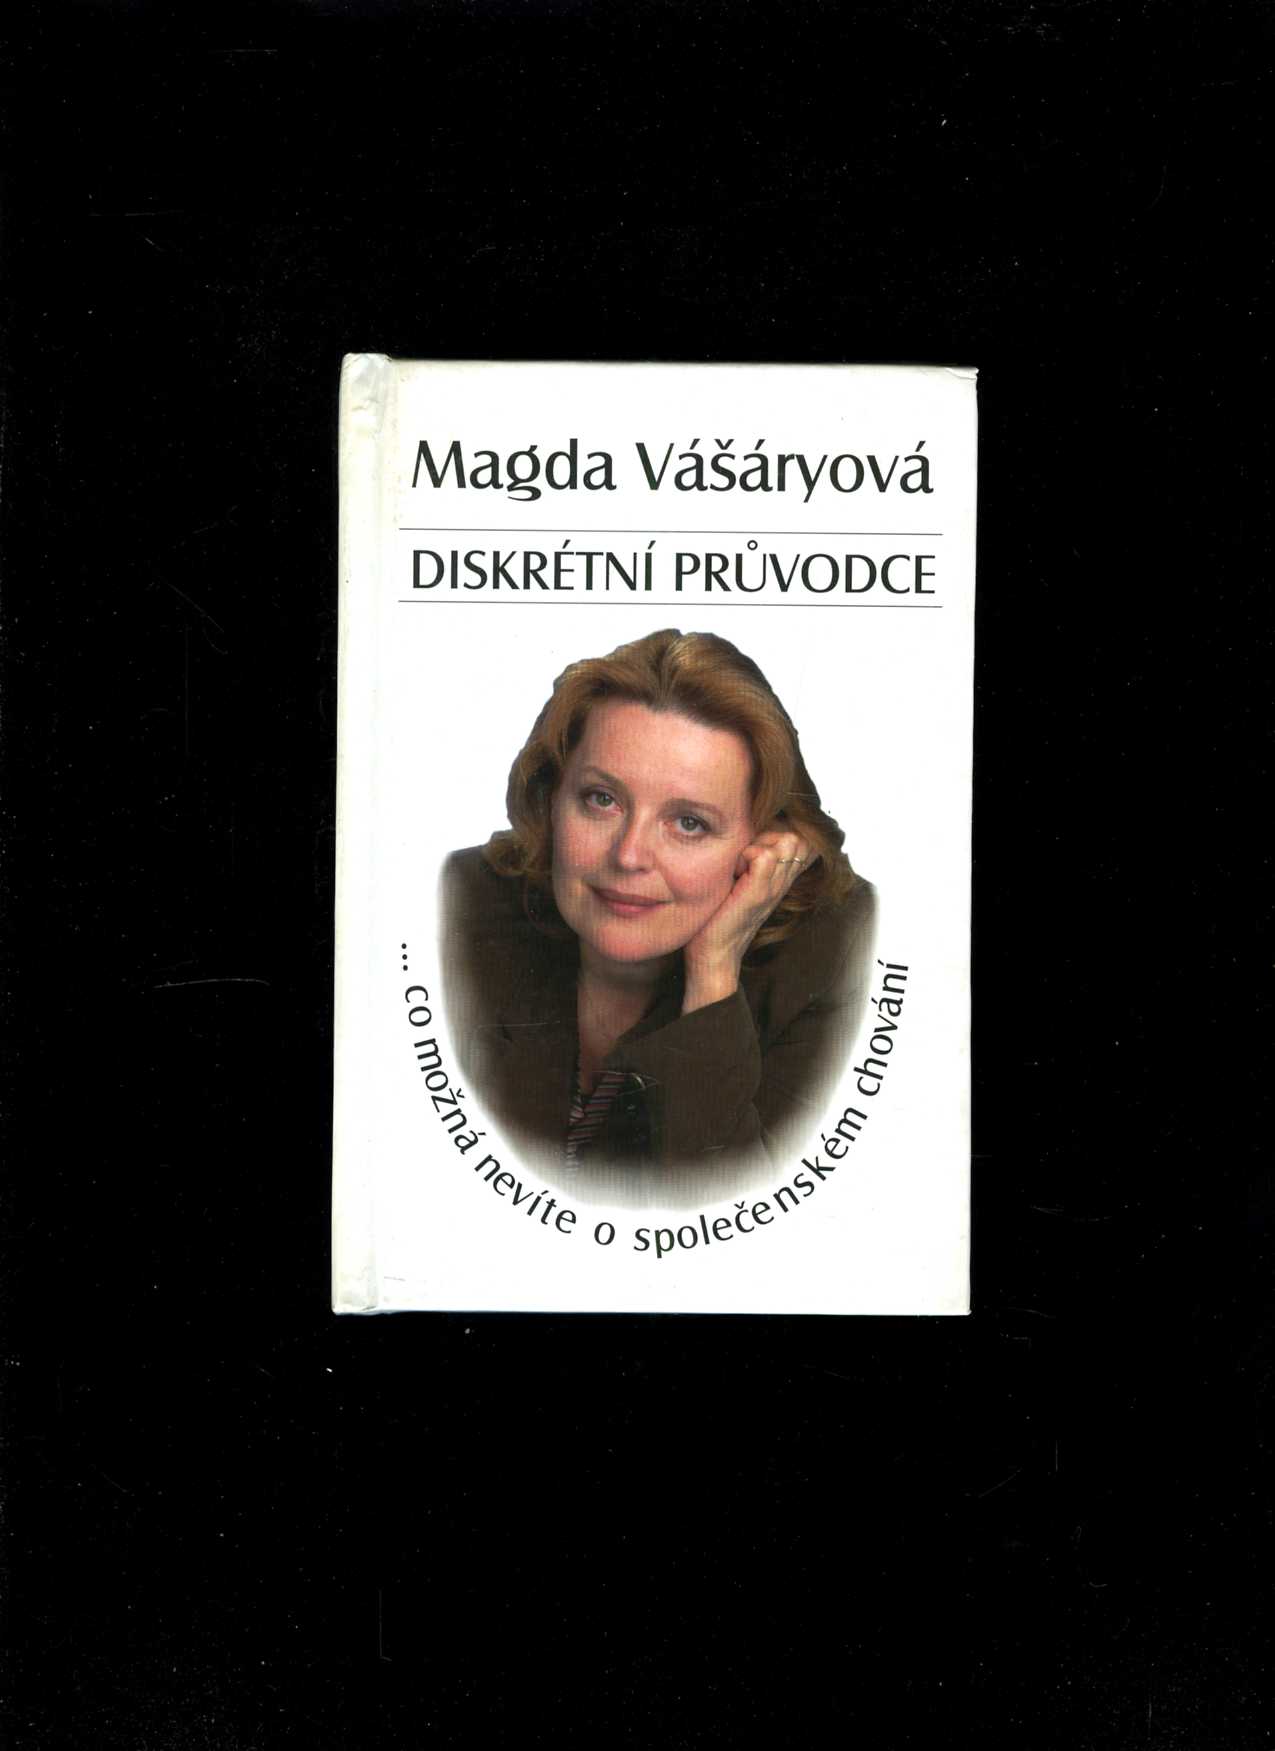 Diskrétní průvodce (Magda Vášáryová)